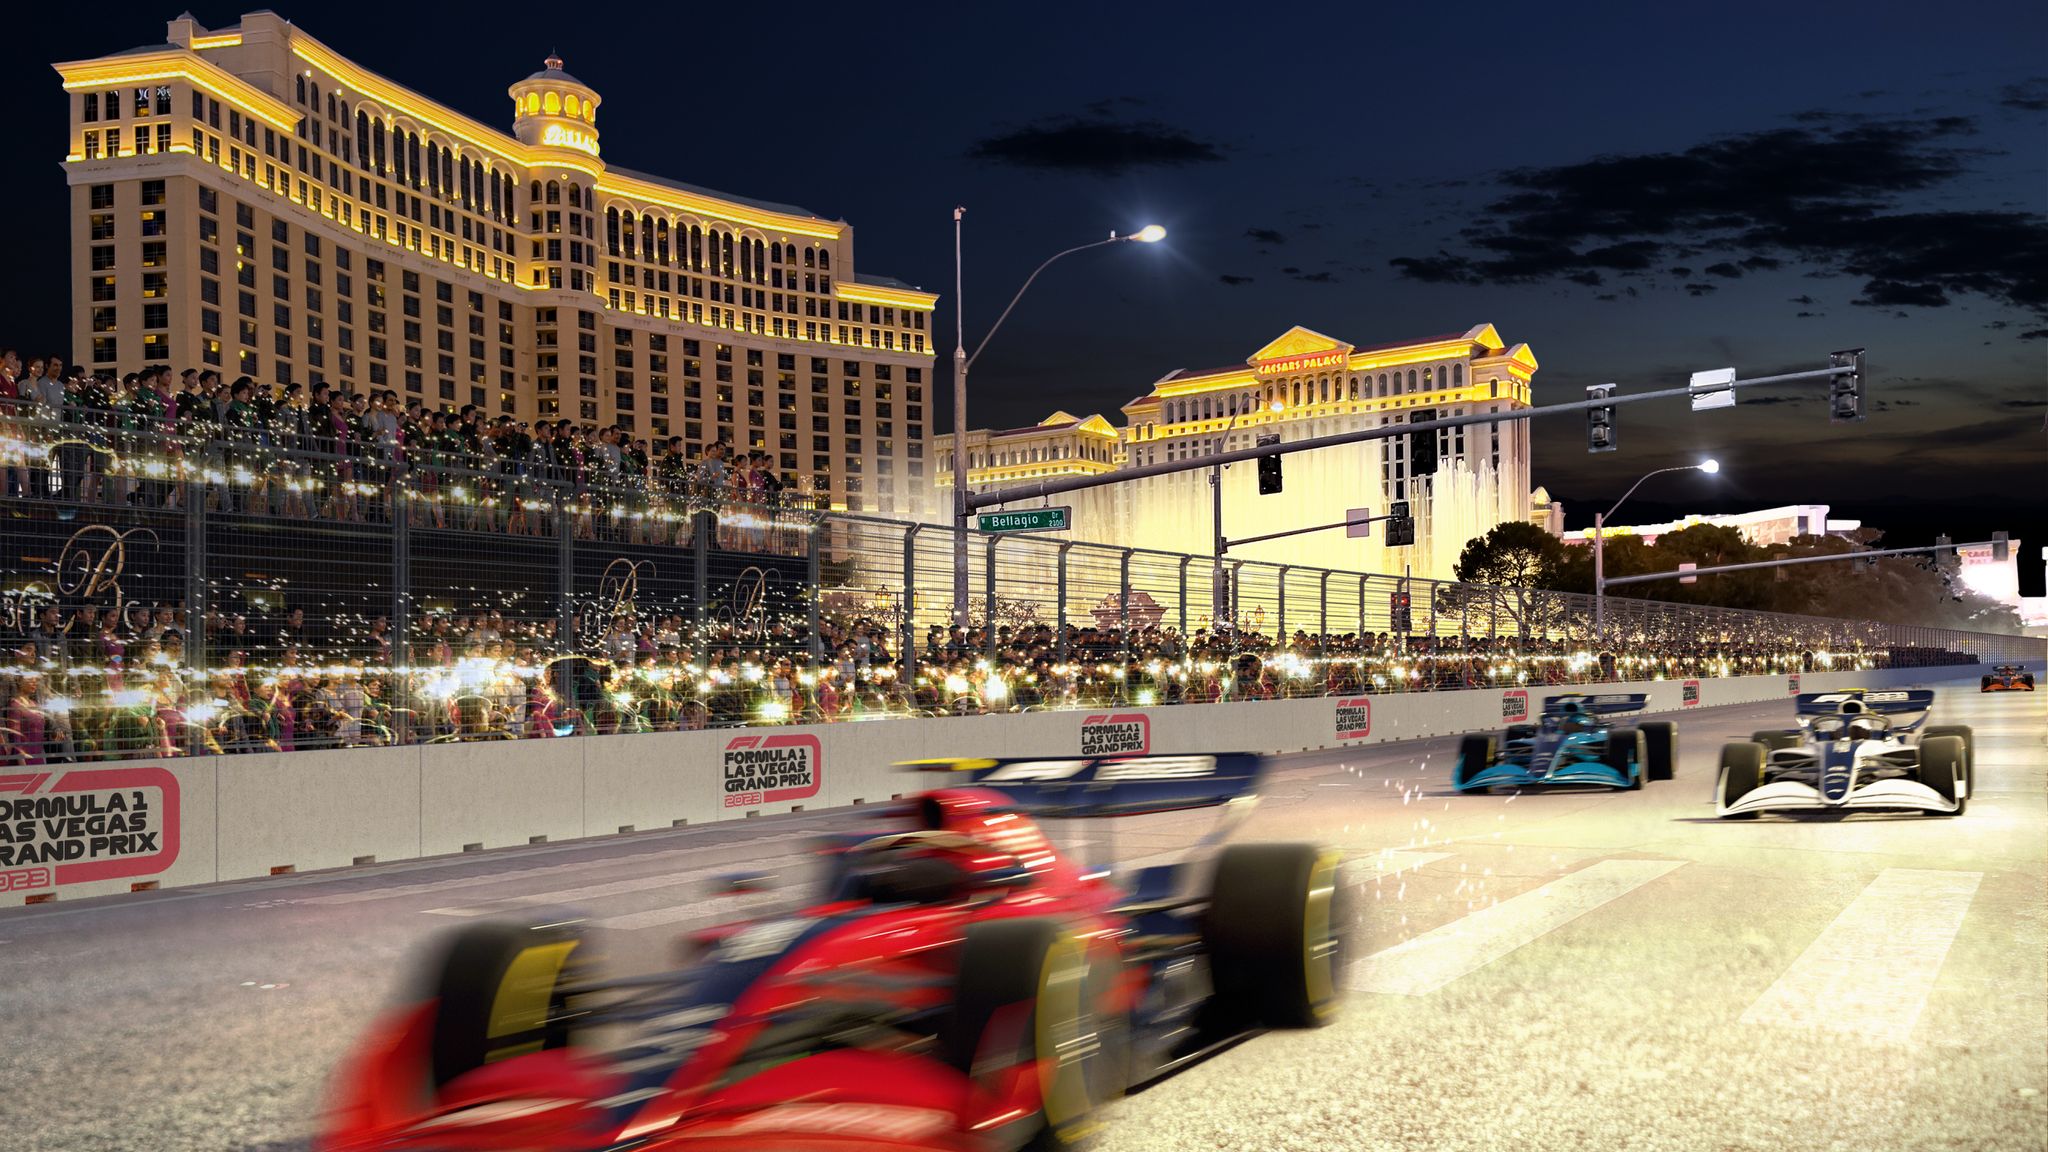 Las Vegas Grand Prix pit lane, Major concerns pit exit